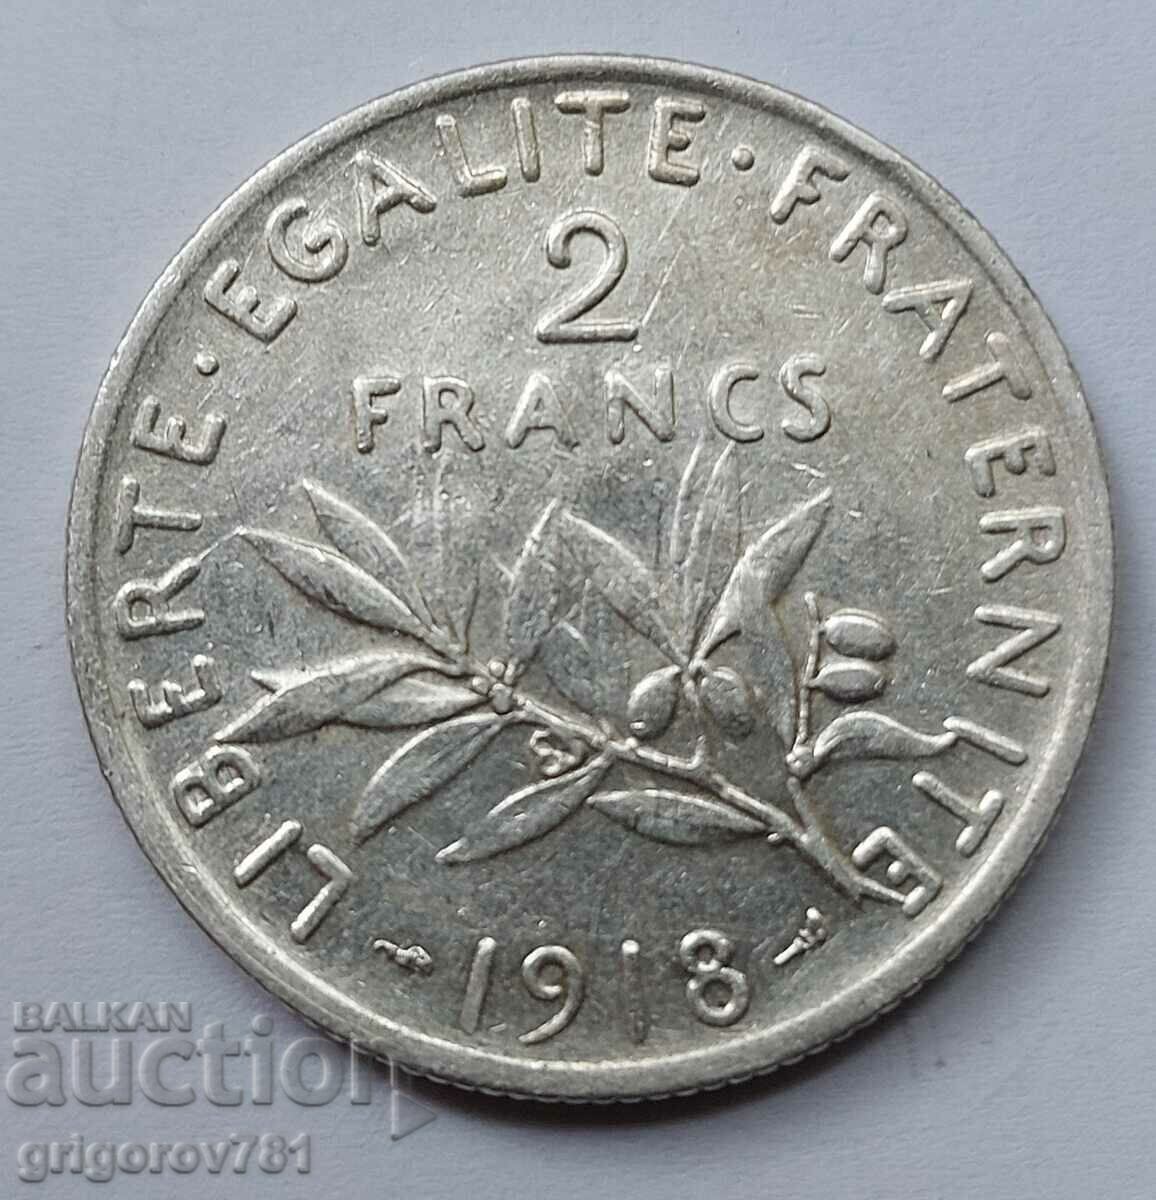 2 Franci Argint Franta 1918 - Moneda de argint #133